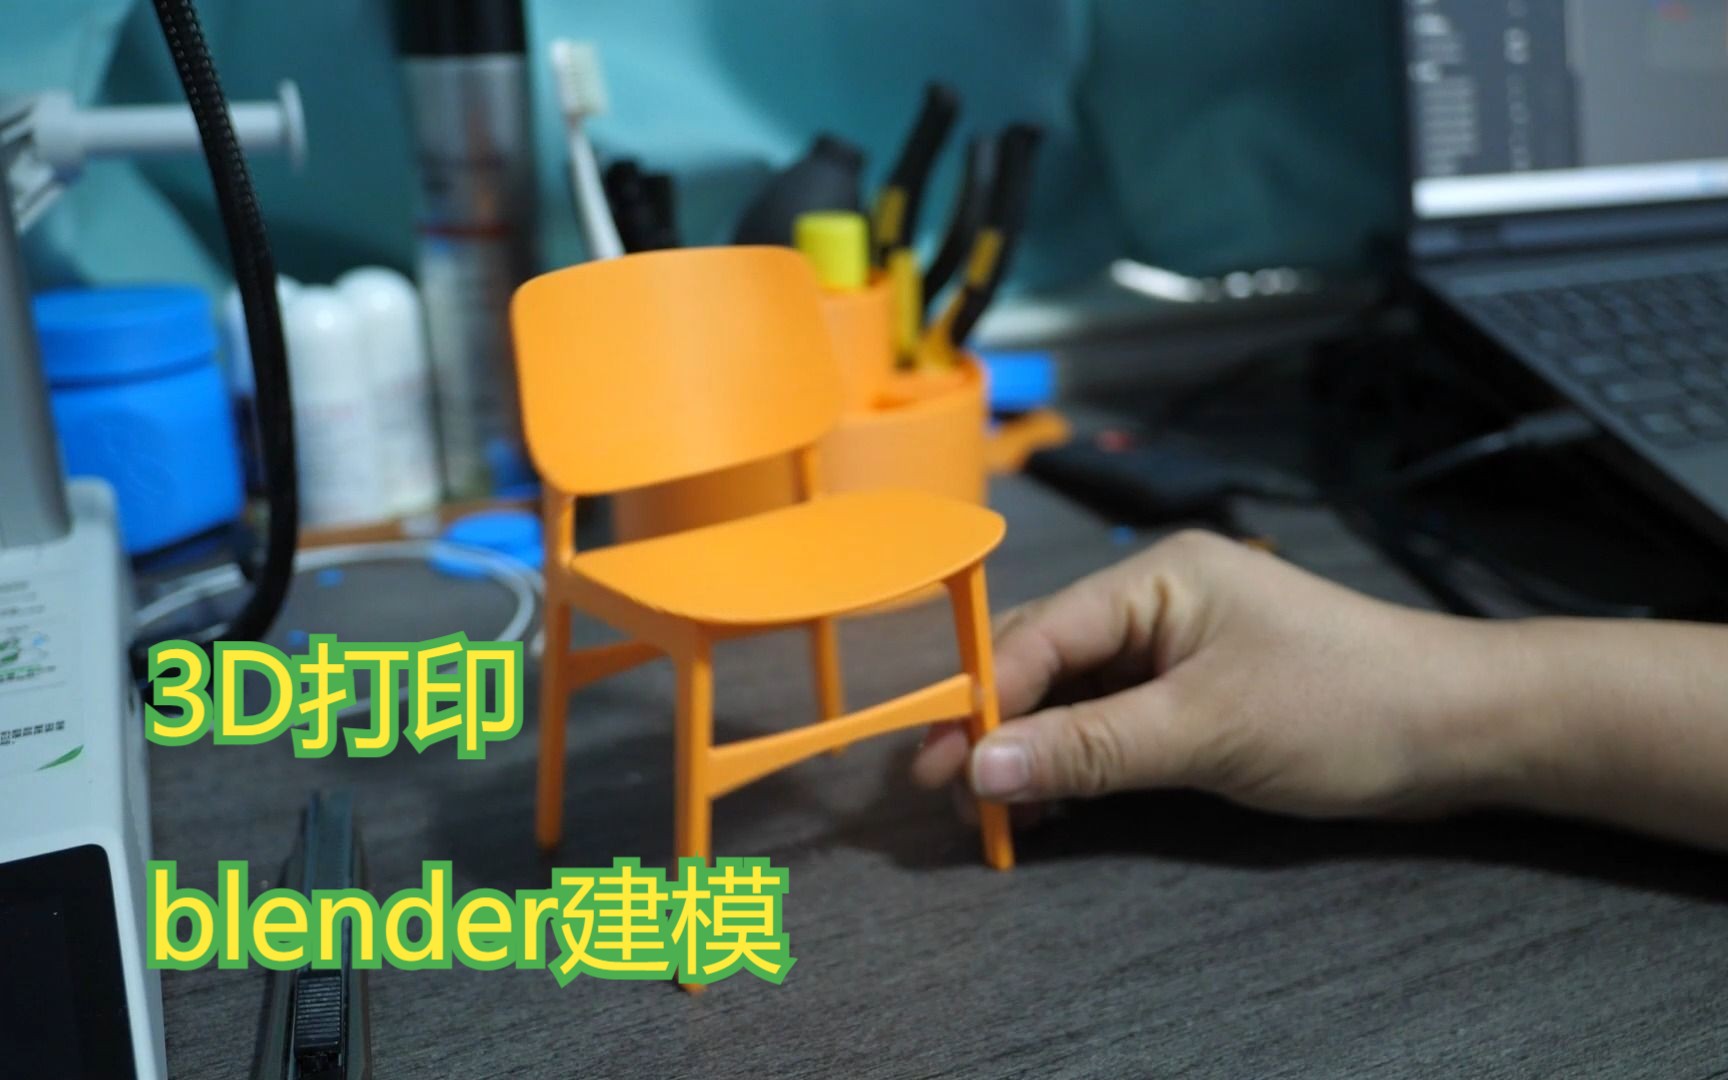 用3D打印 blender建模的椅子，感觉挺奇妙